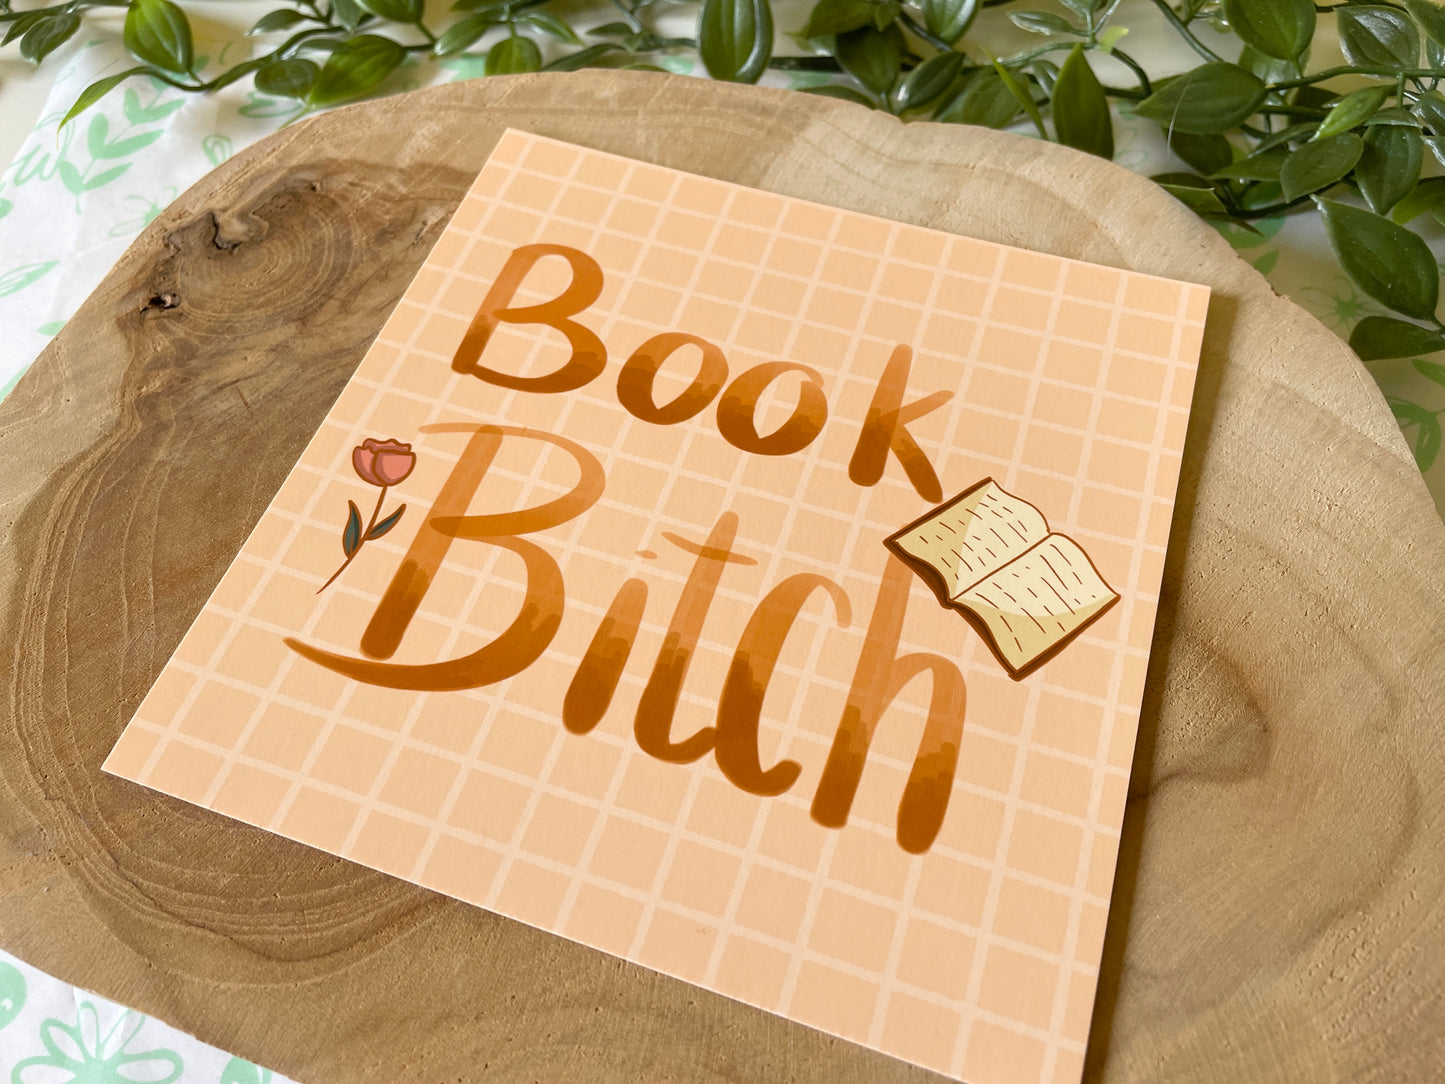 Book Bitch Square Print